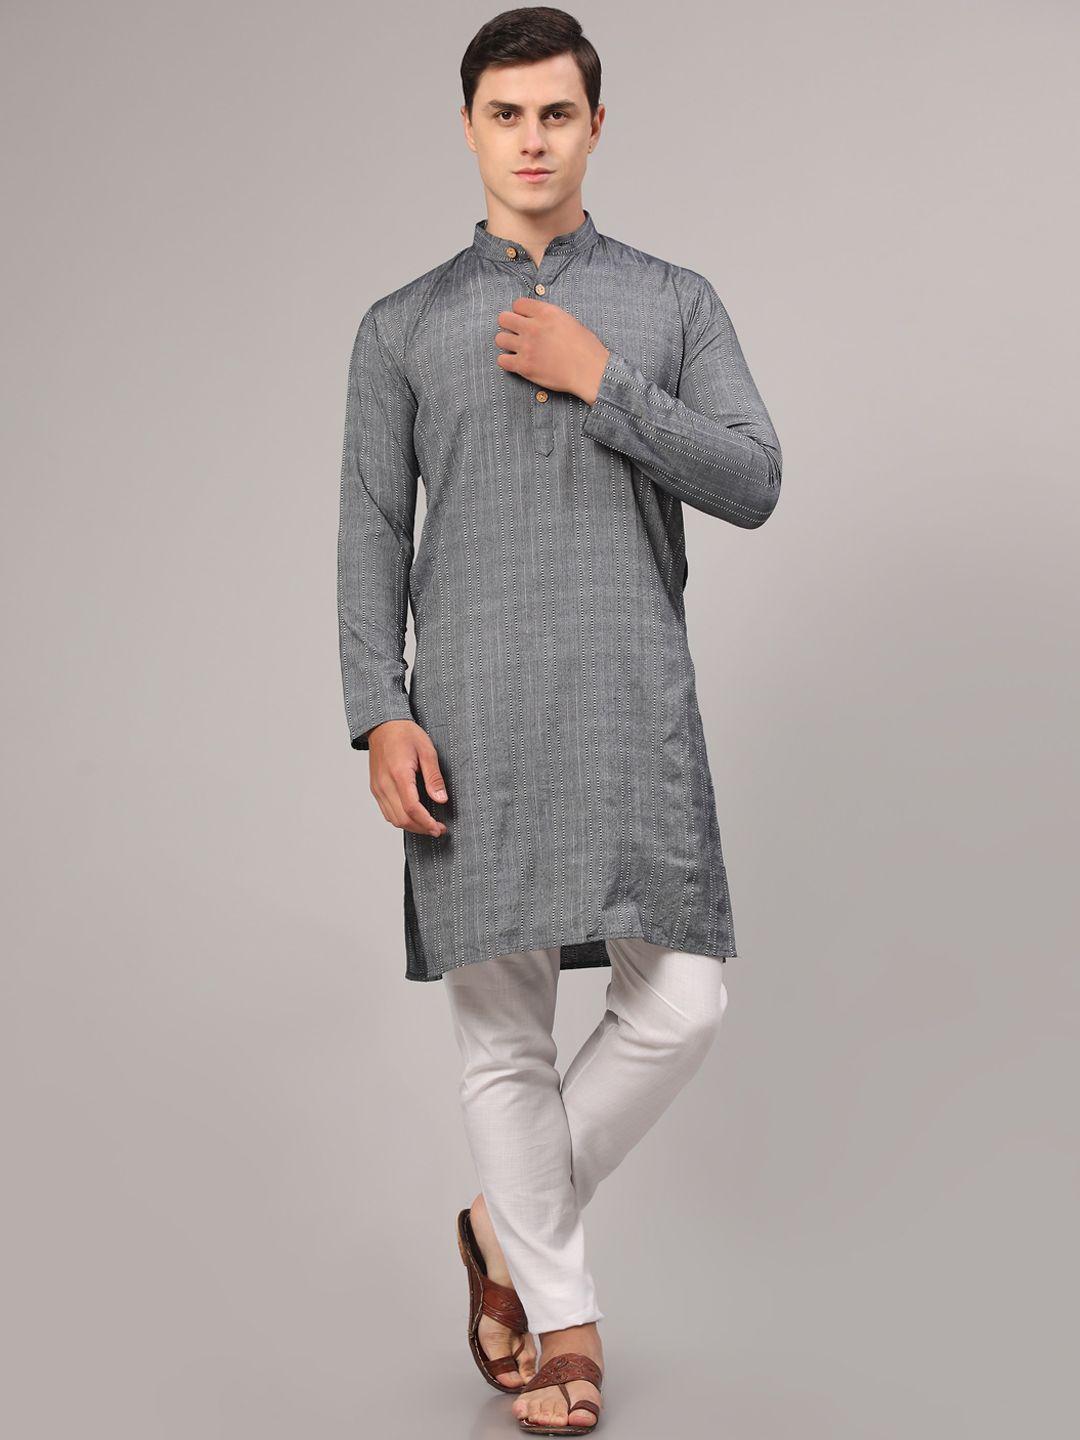 nimidiya striped regular pure cotton kurta with pyjamas